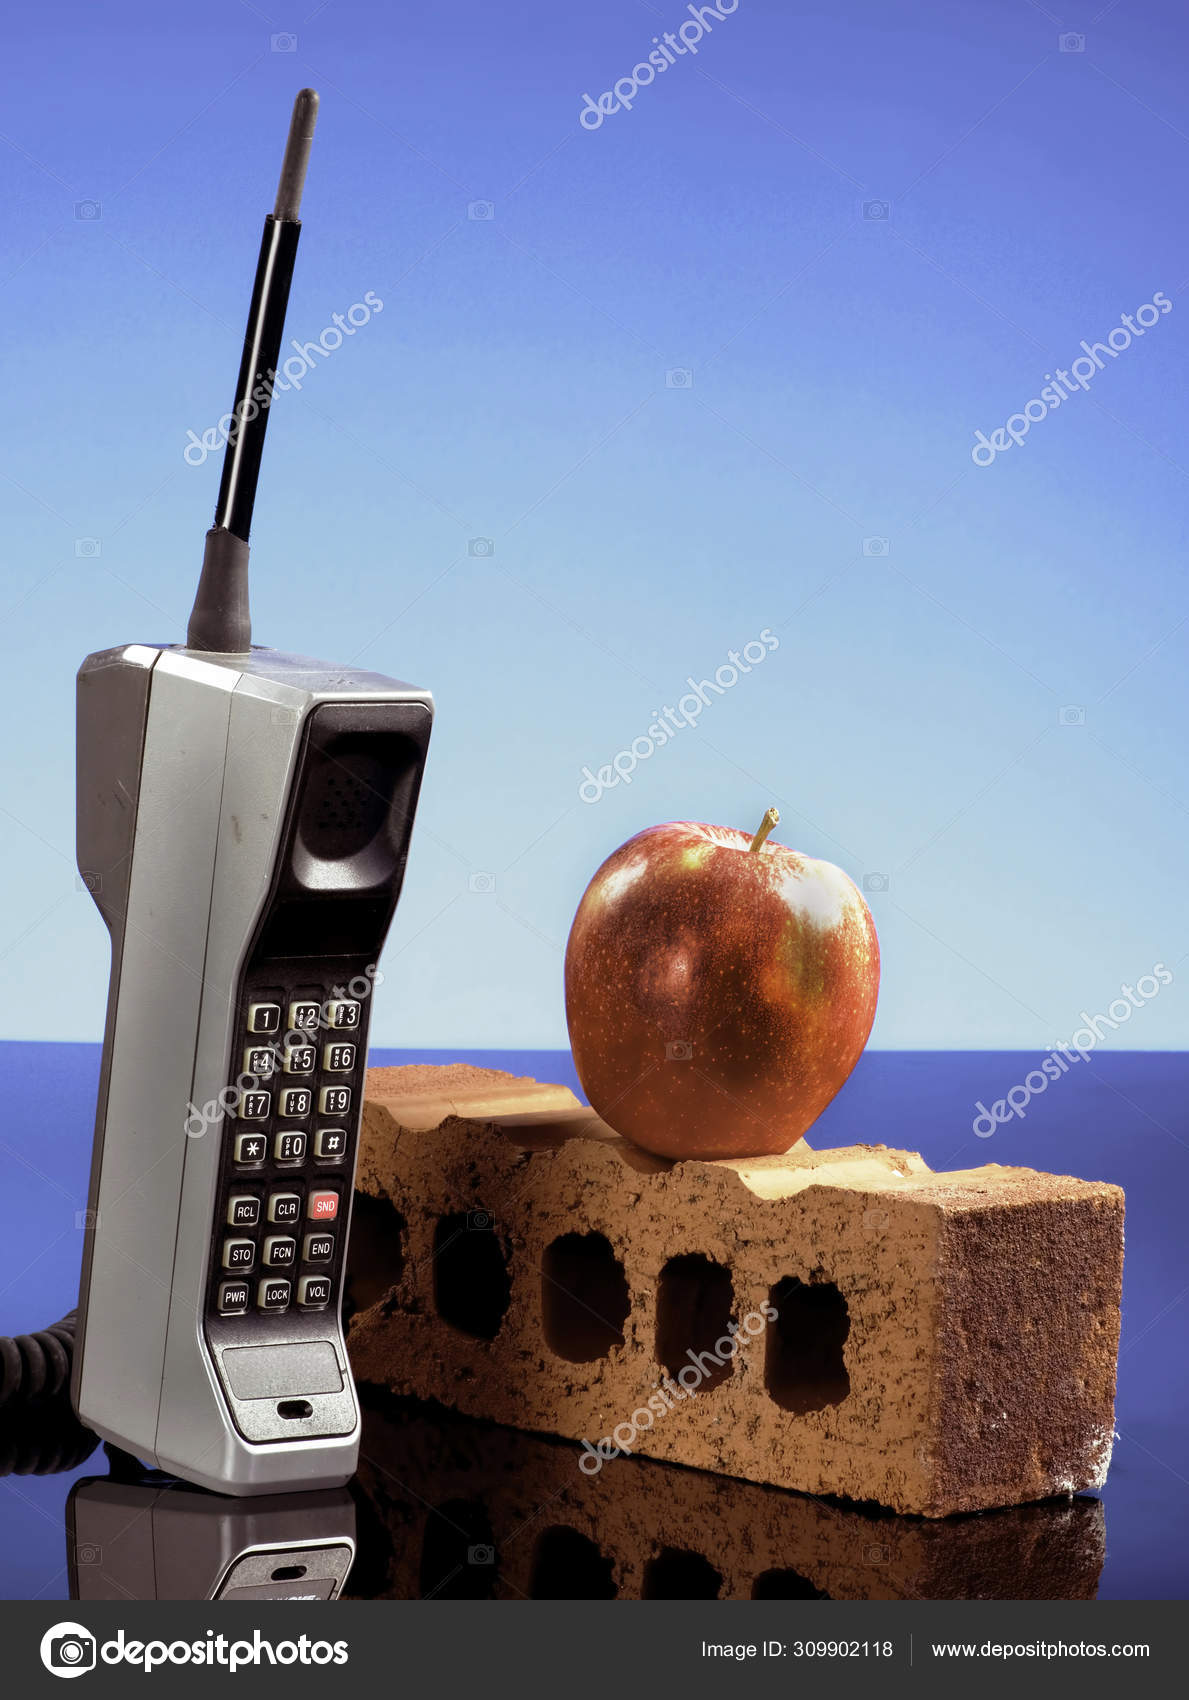 Telefone Celular Retro Usado Velho Da Pilha Isolado No Branco Imagem de  Stock - Imagem de falar, contato: 128105387